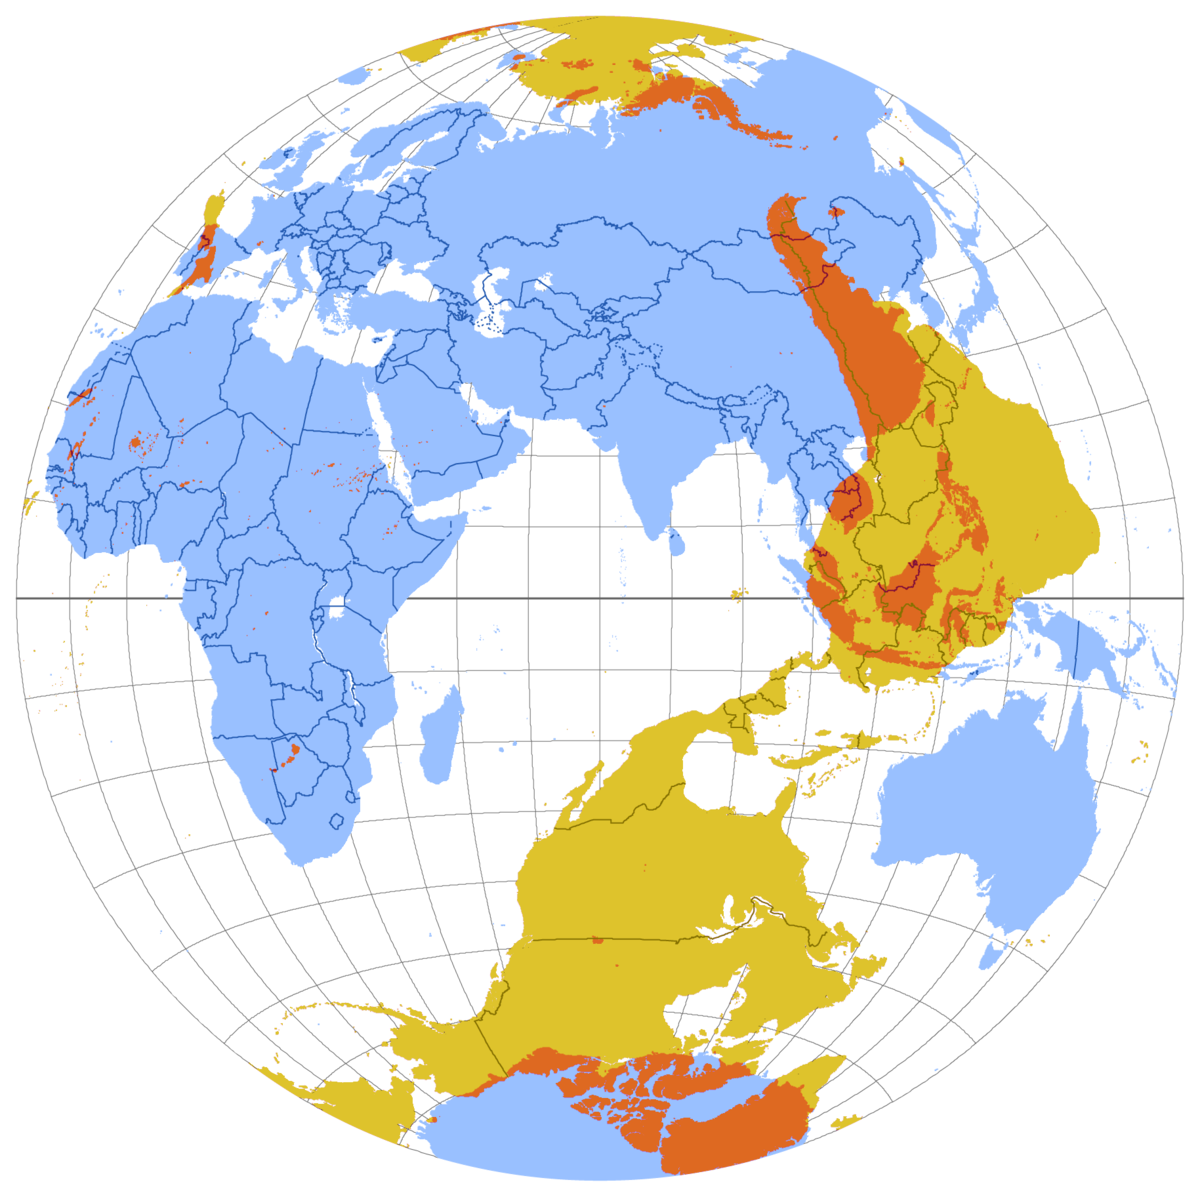 Belahan bumi yg lain, di satukan dalam peta | CC BY-SA 2.5